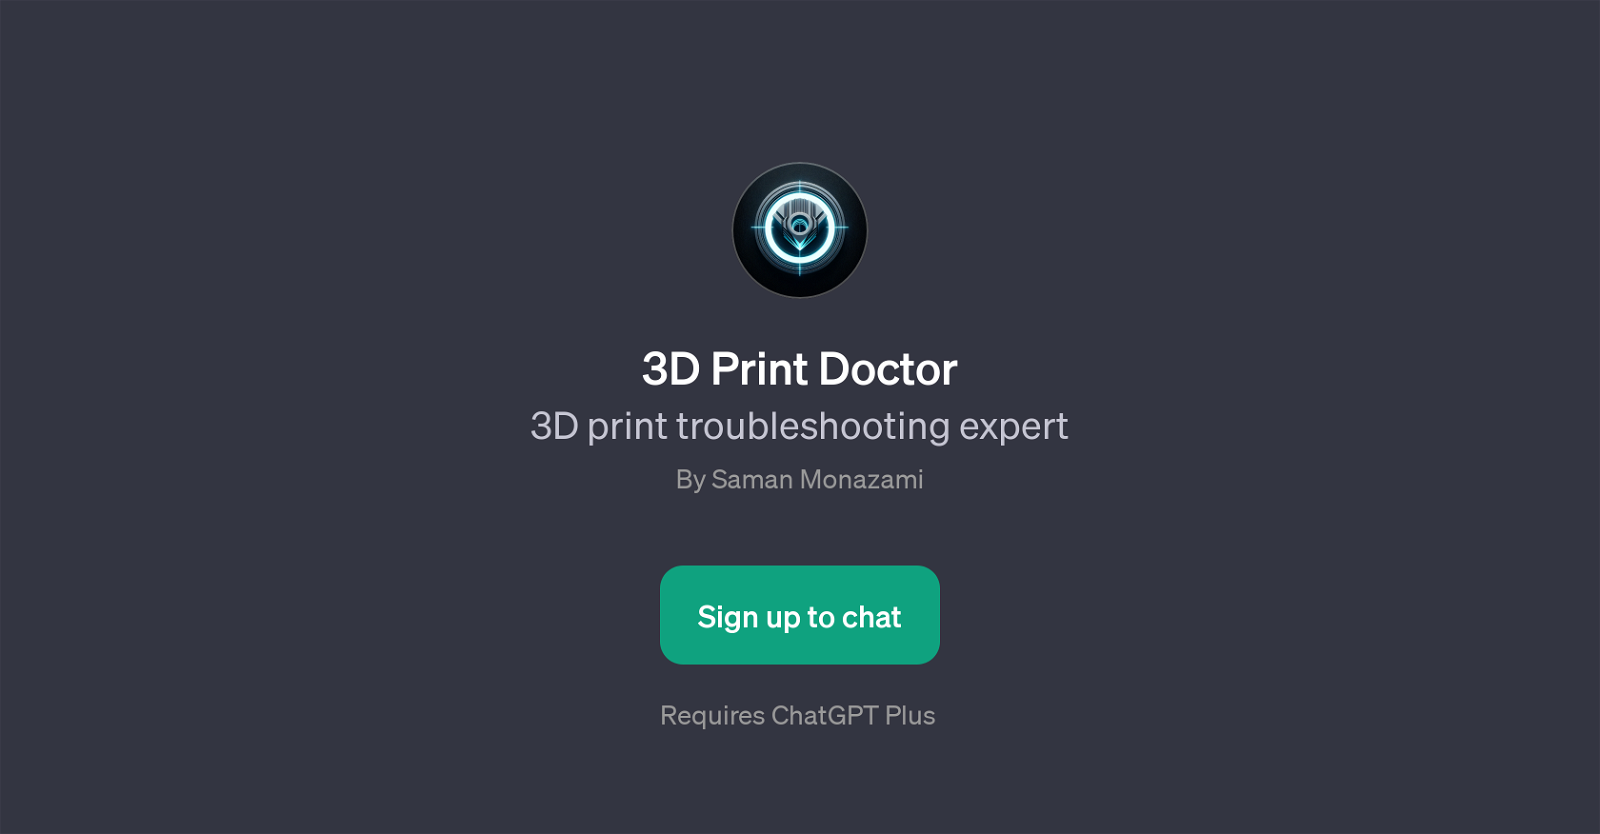 3D Print Doctor website